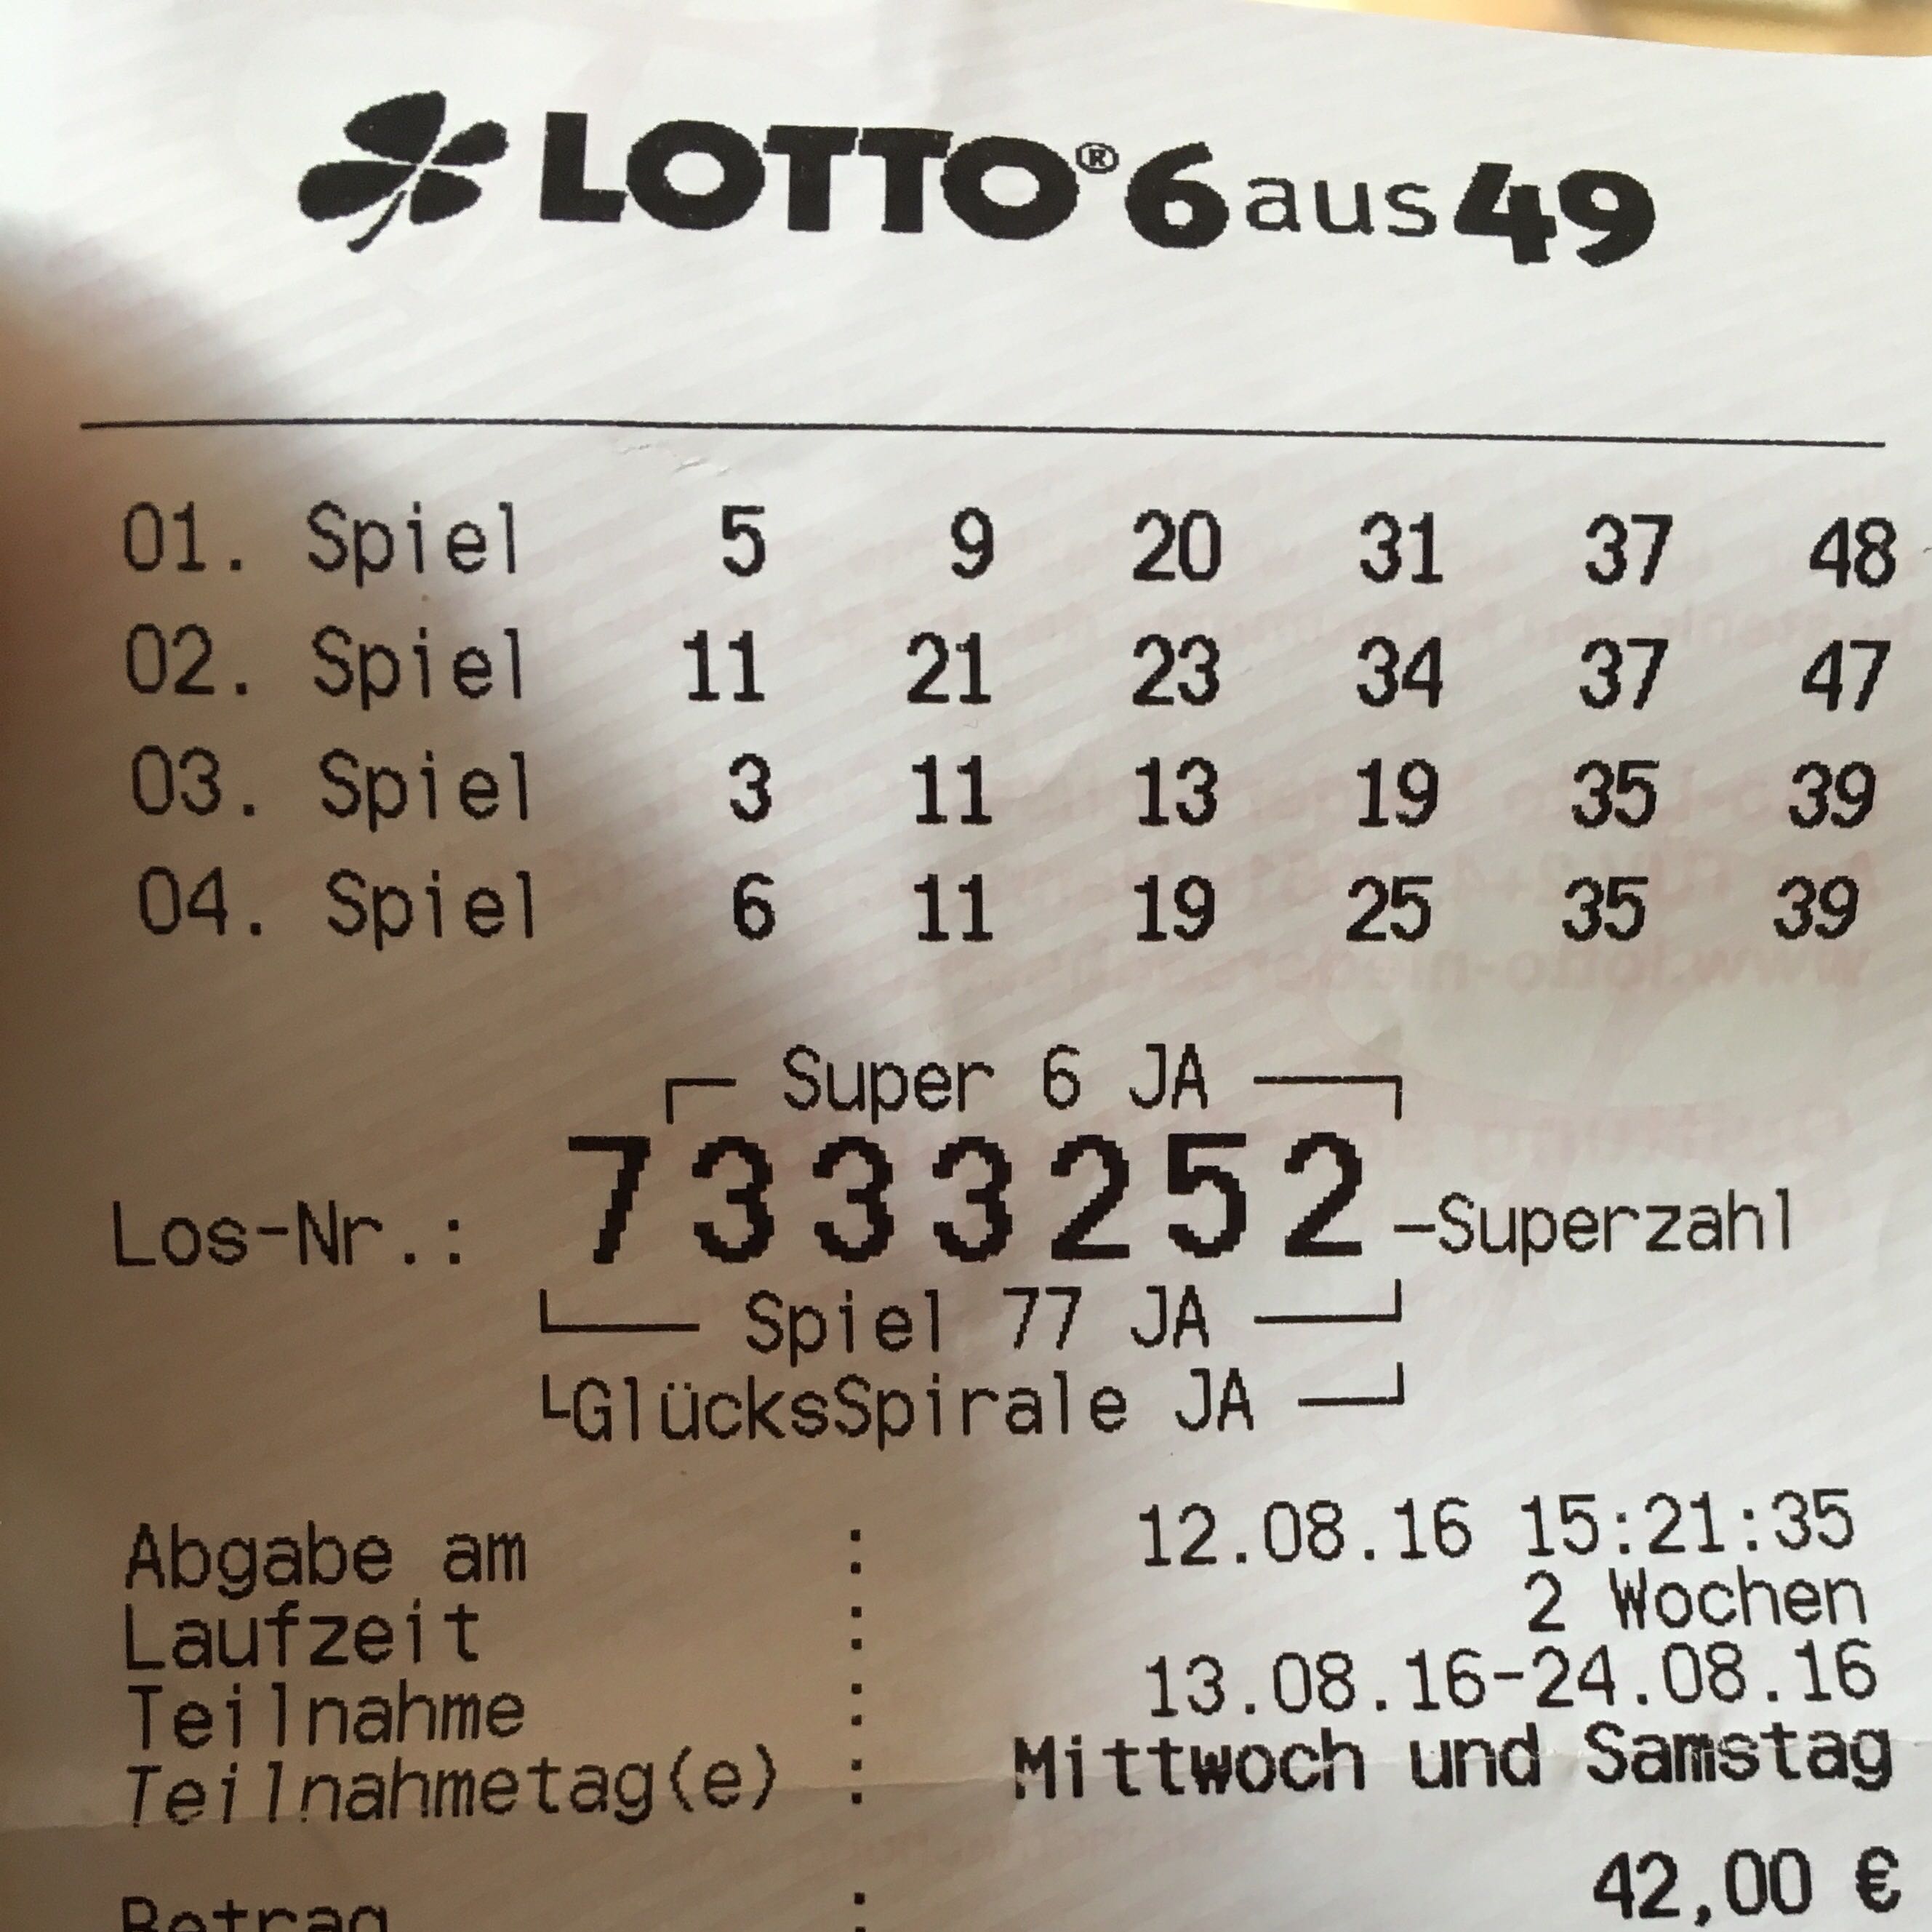 Lotto HГ¤ufigste Superzahl